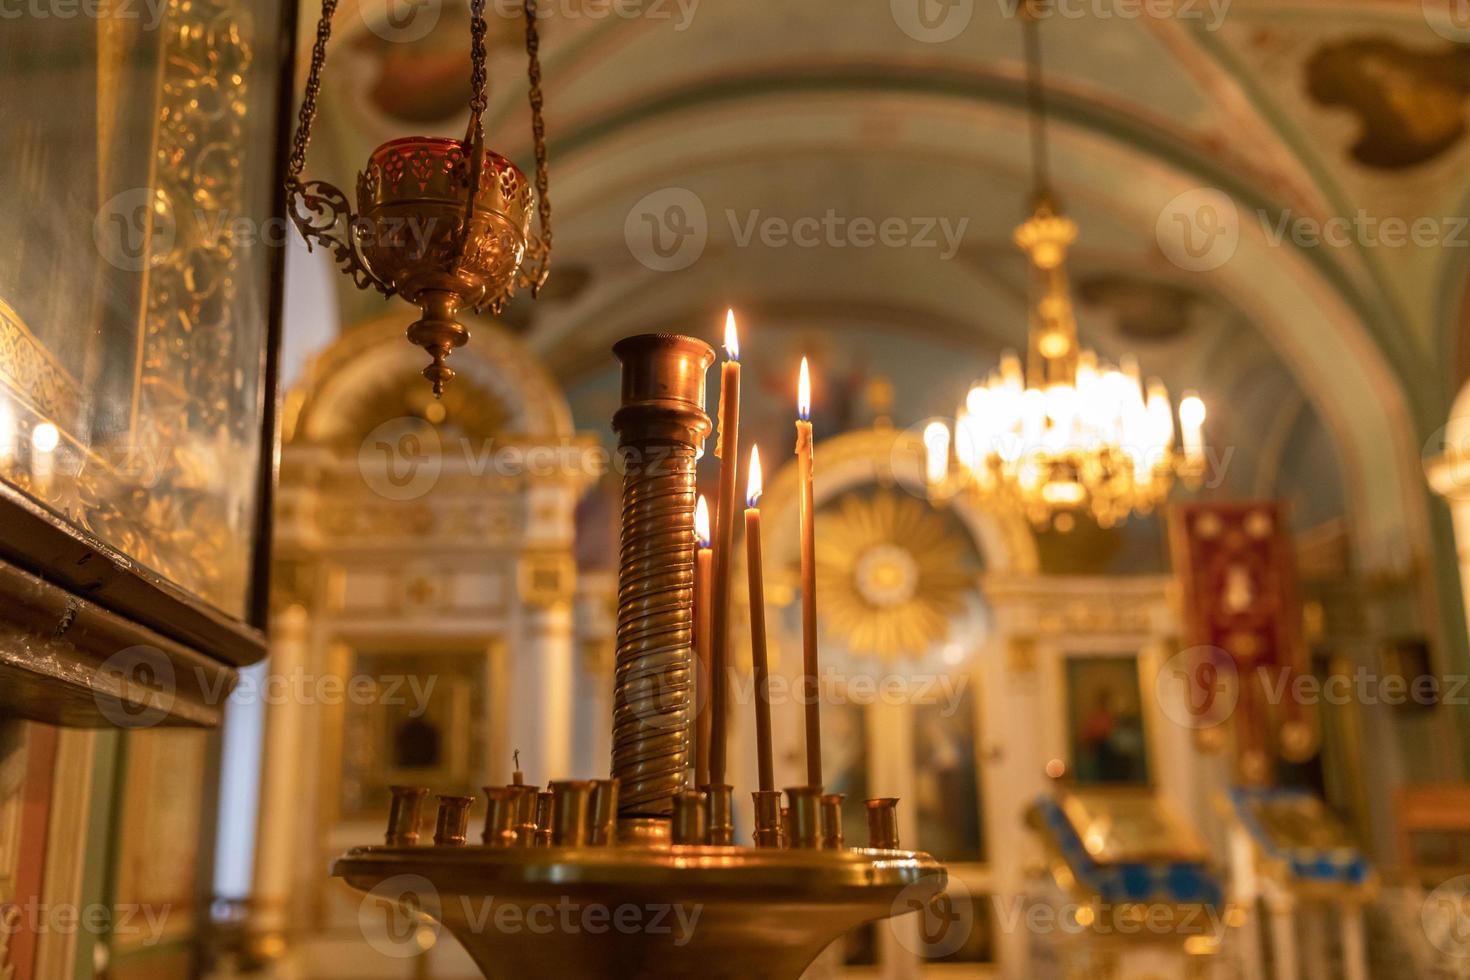 église orthodoxe. christianisme. décoration intérieure festive avec bougies allumées et icône dans l'église orthodoxe traditionnelle la veille de pâques ou de noël. religion foi prier symbole. photo